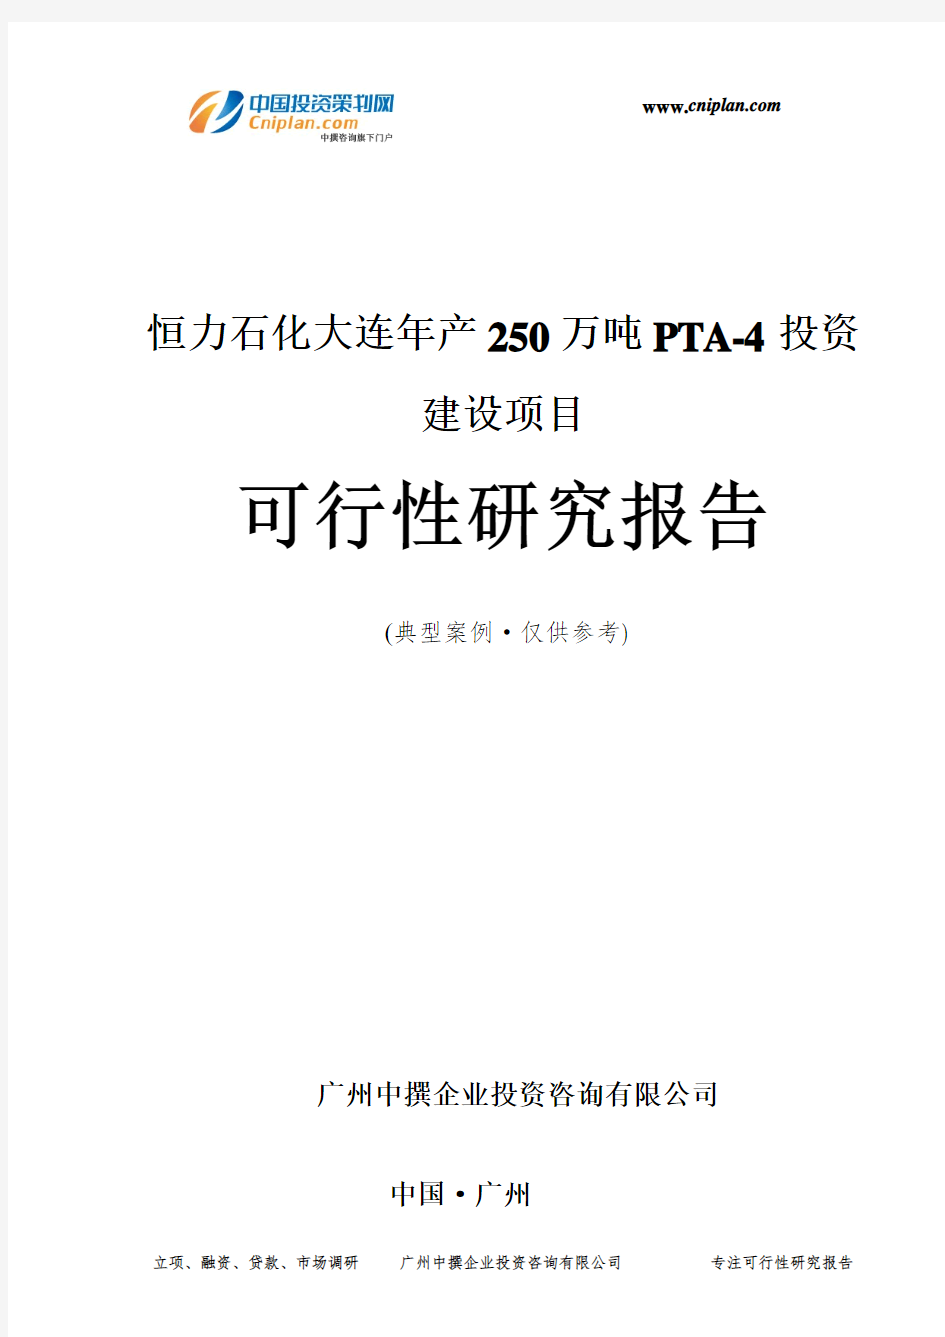 恒力石化大连年产250万吨PTA-4投资建设项目可行性研究报告-广州中撰咨询